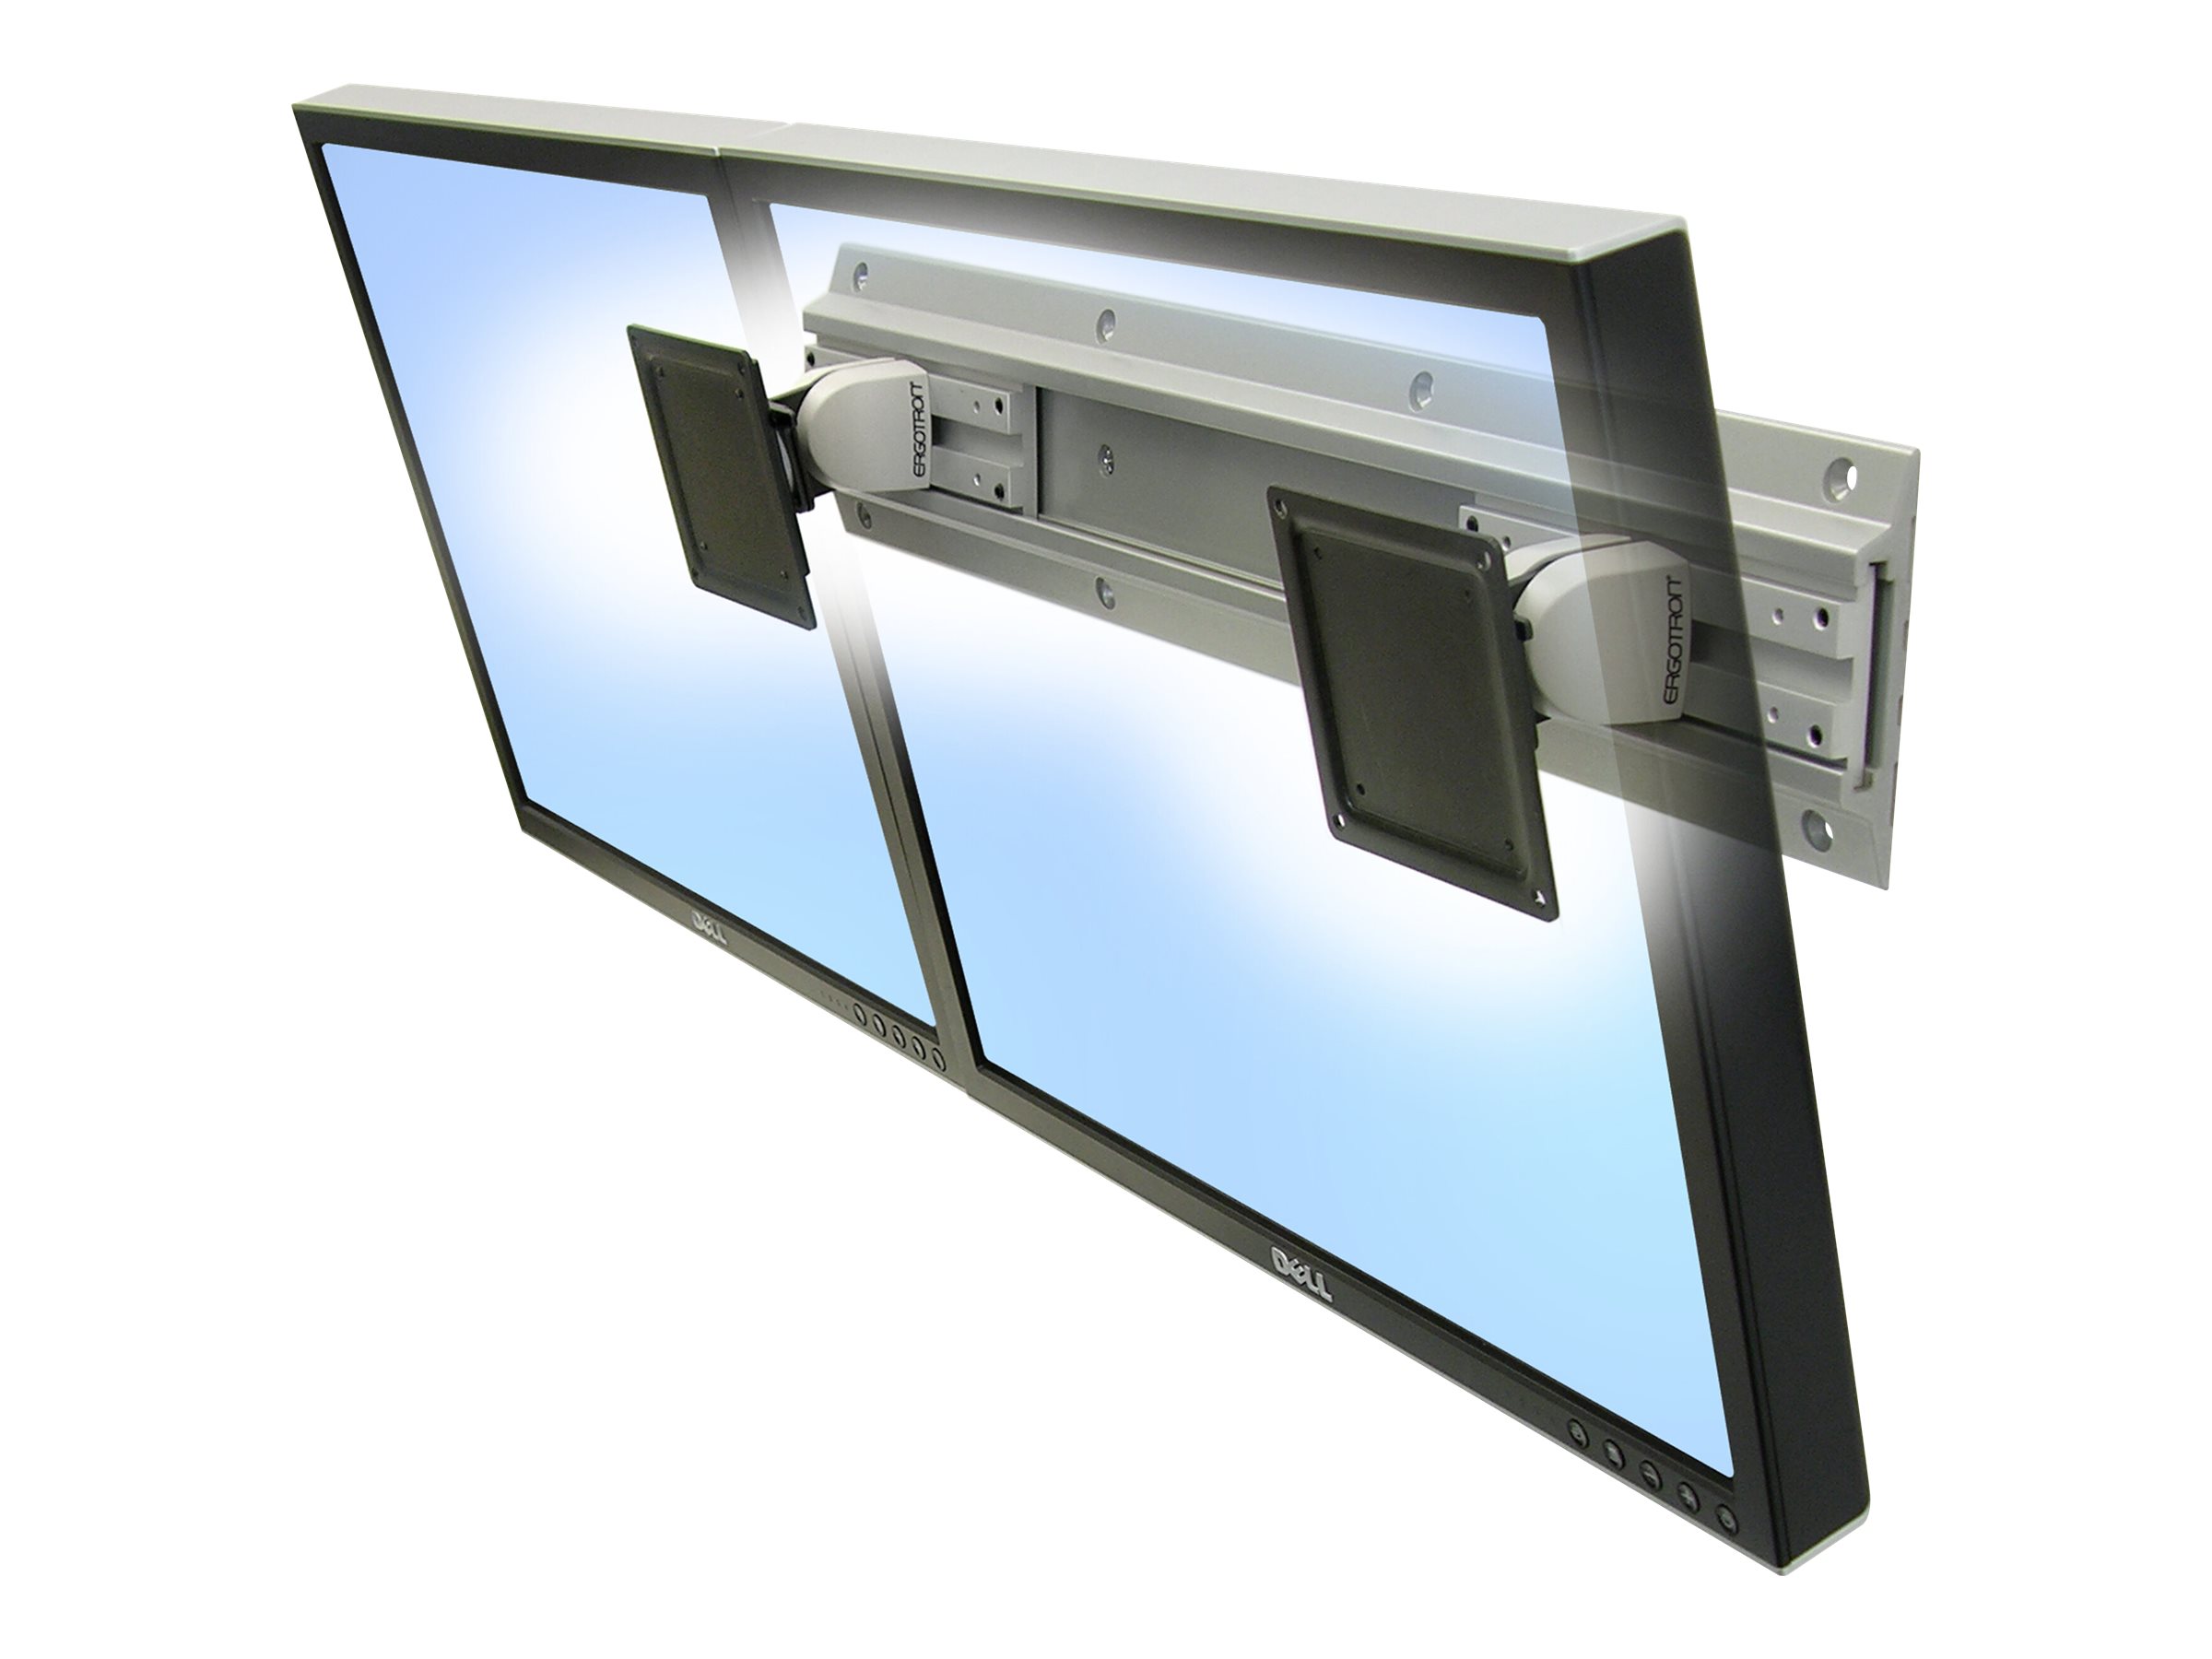 Ergotron Neo-Flex - Kit de montage (2 pivots, 2 supports de montage de rack, rail mural 26 pouces) - profil bas - pour 2 écrans LCD - gris, noir - Taille d'écran : jusqu'à 24 pouces - montable sur mur - 28-514-800 - Montages pour TV et moniteur